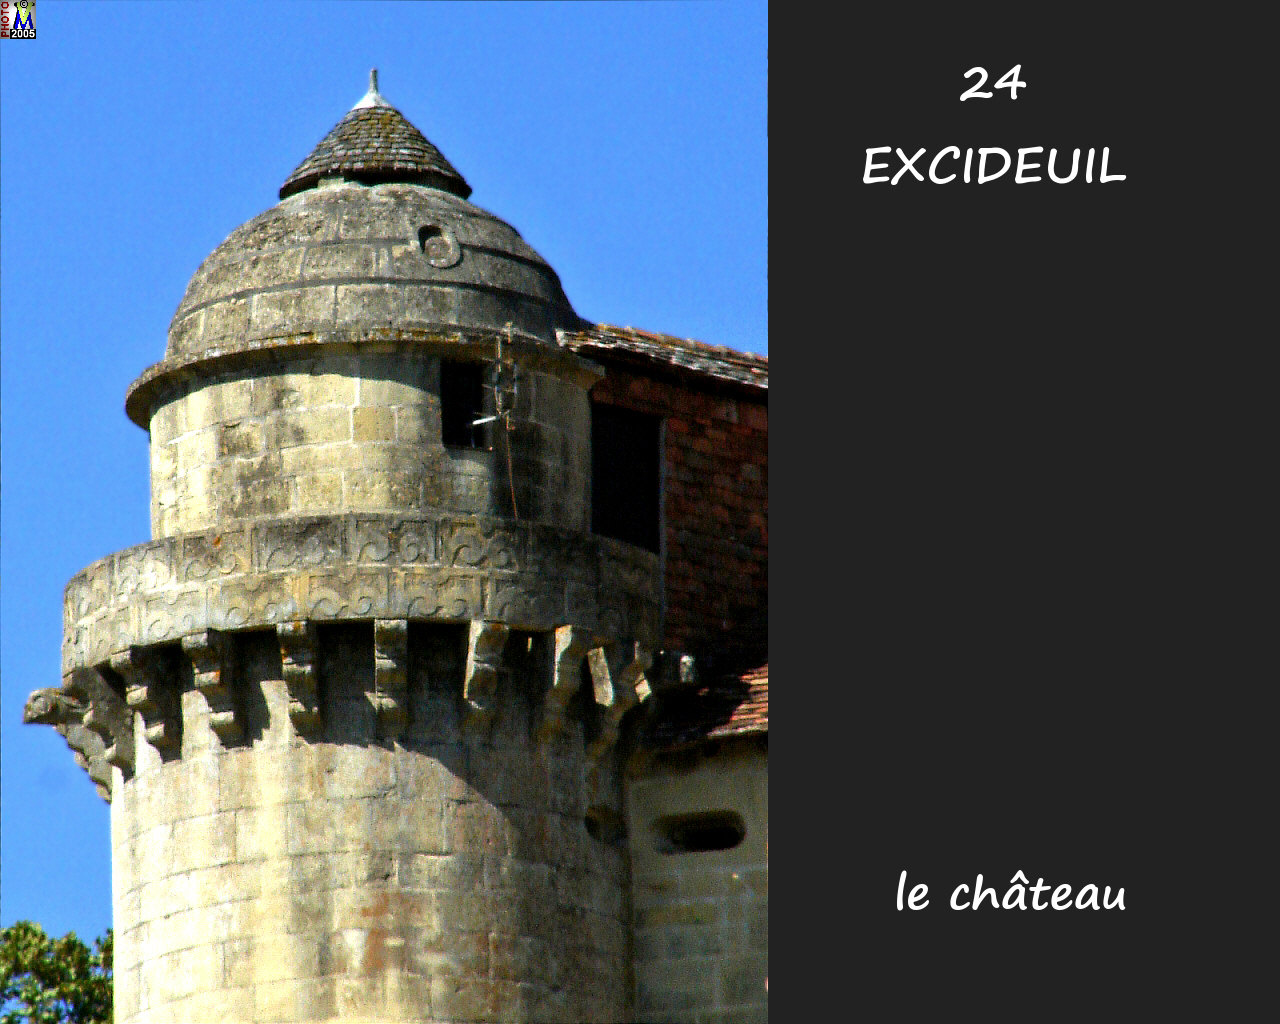 24EXCIDEUIL_chateau_108.jpg